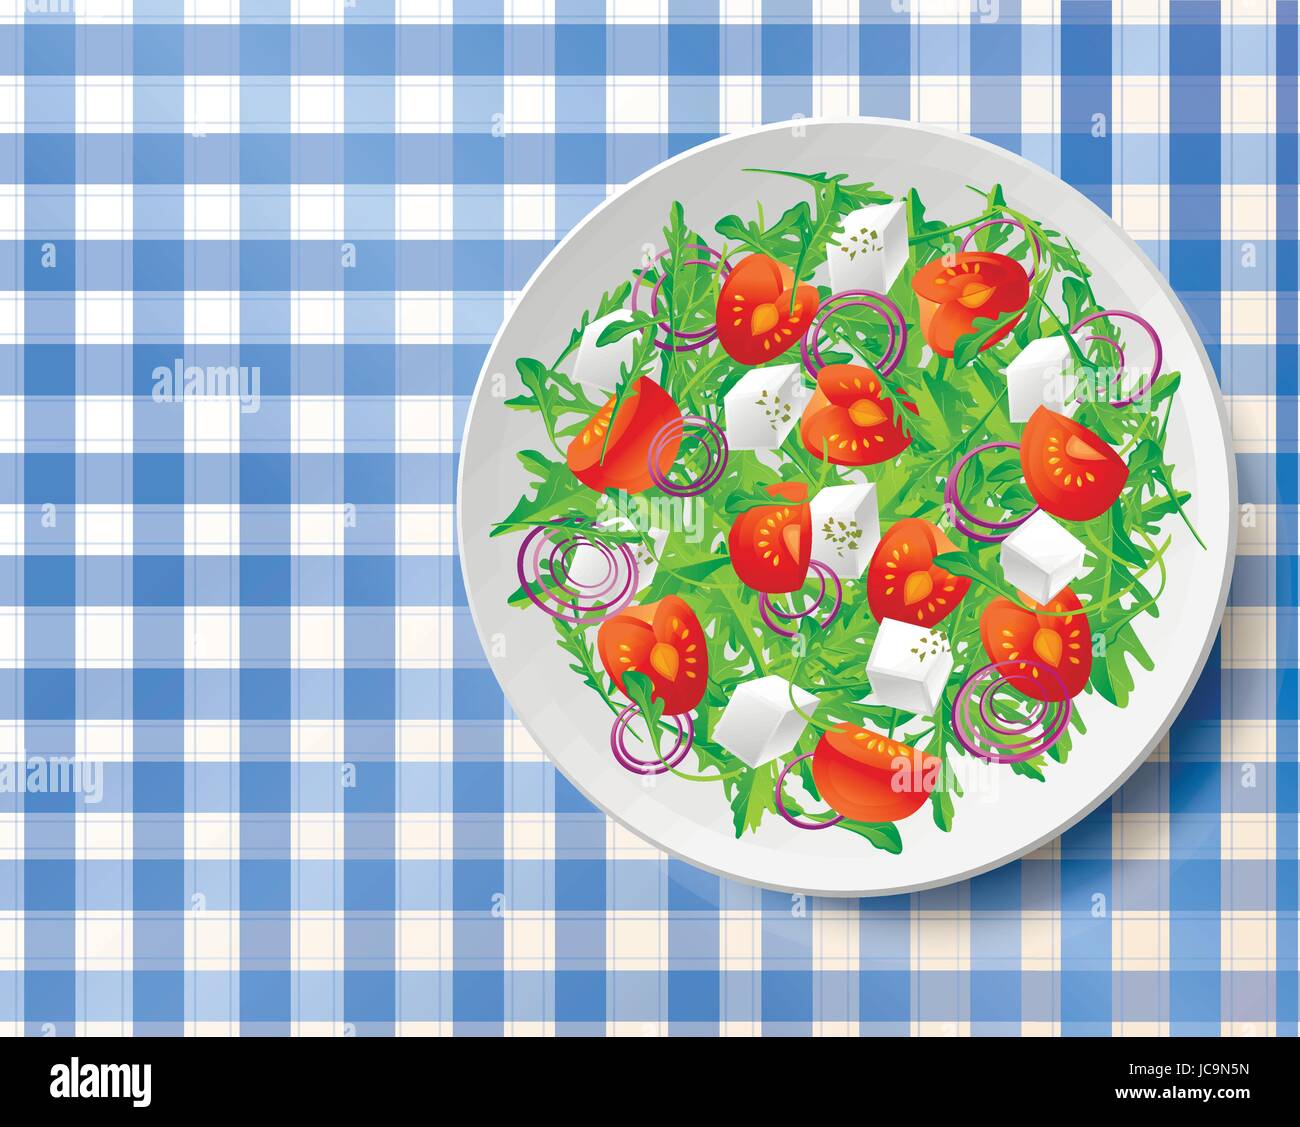 Ensalada de verduras frescas con sabrosos rúcula o rúcula, rúcula, tomates, queso feta, cebolla roja y orégano sobre placa blanca sobre el mantel azul .vista superior c Ilustración del Vector